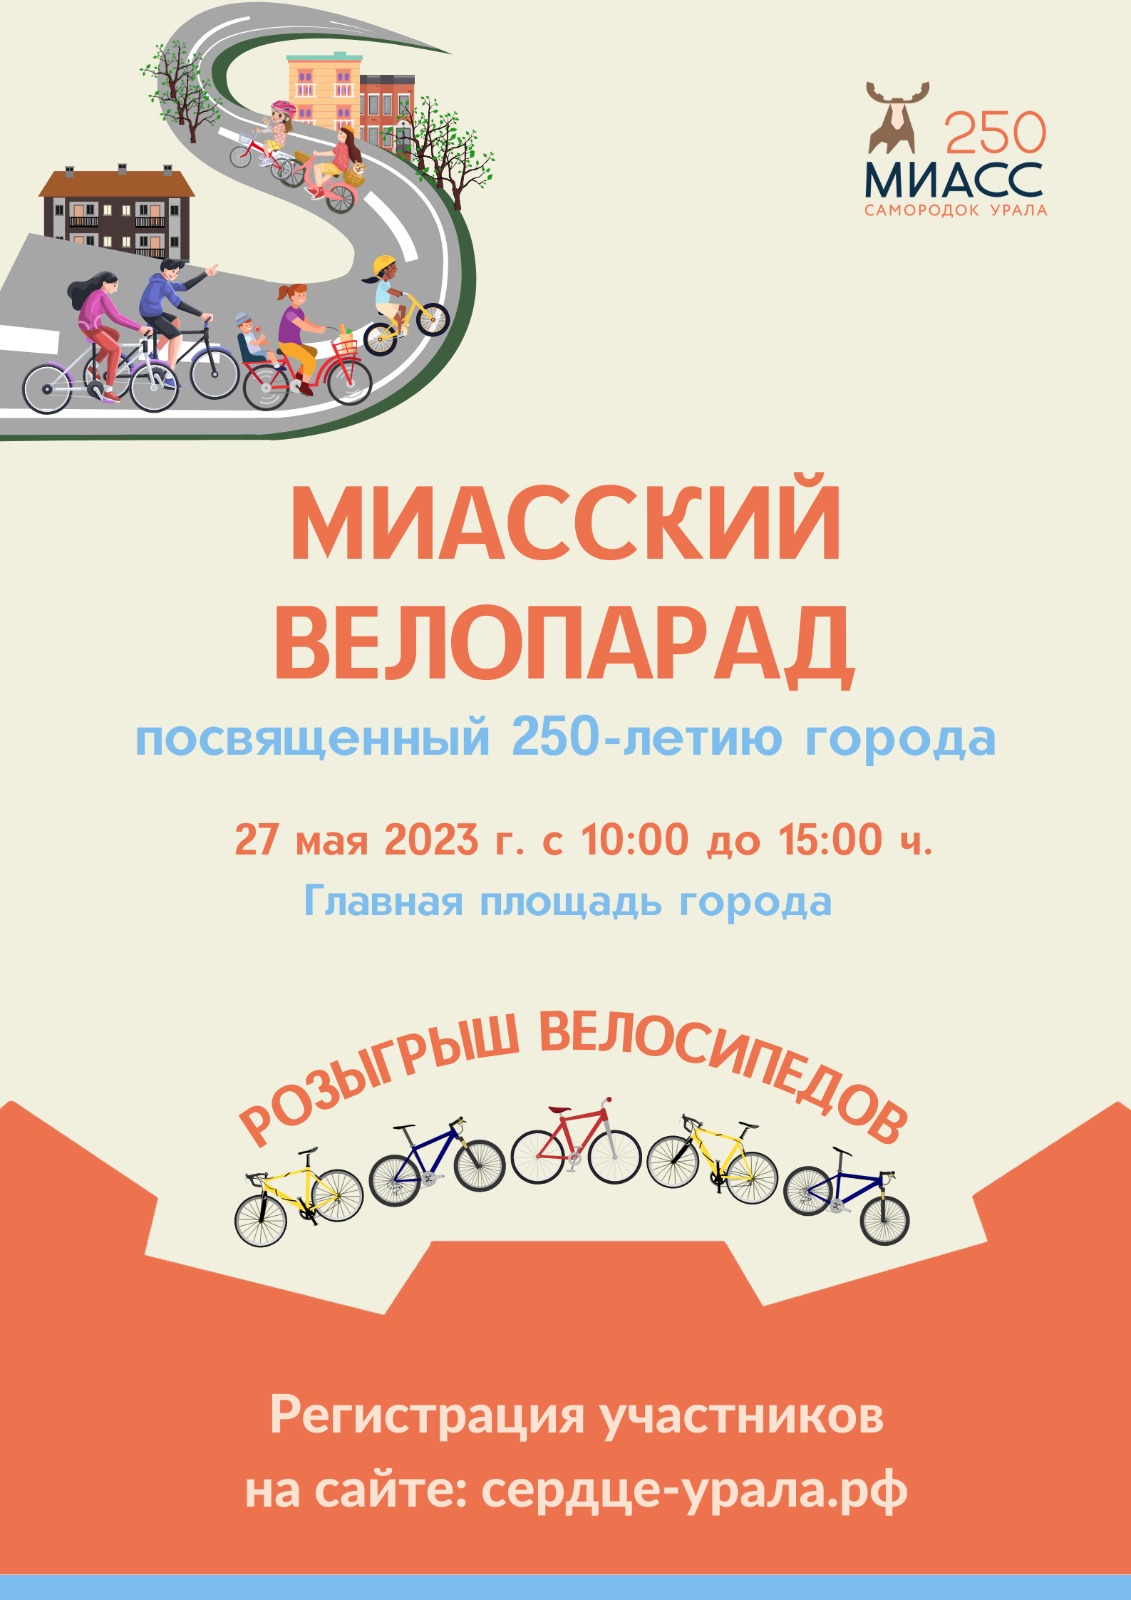 Миасский велопарад 2023